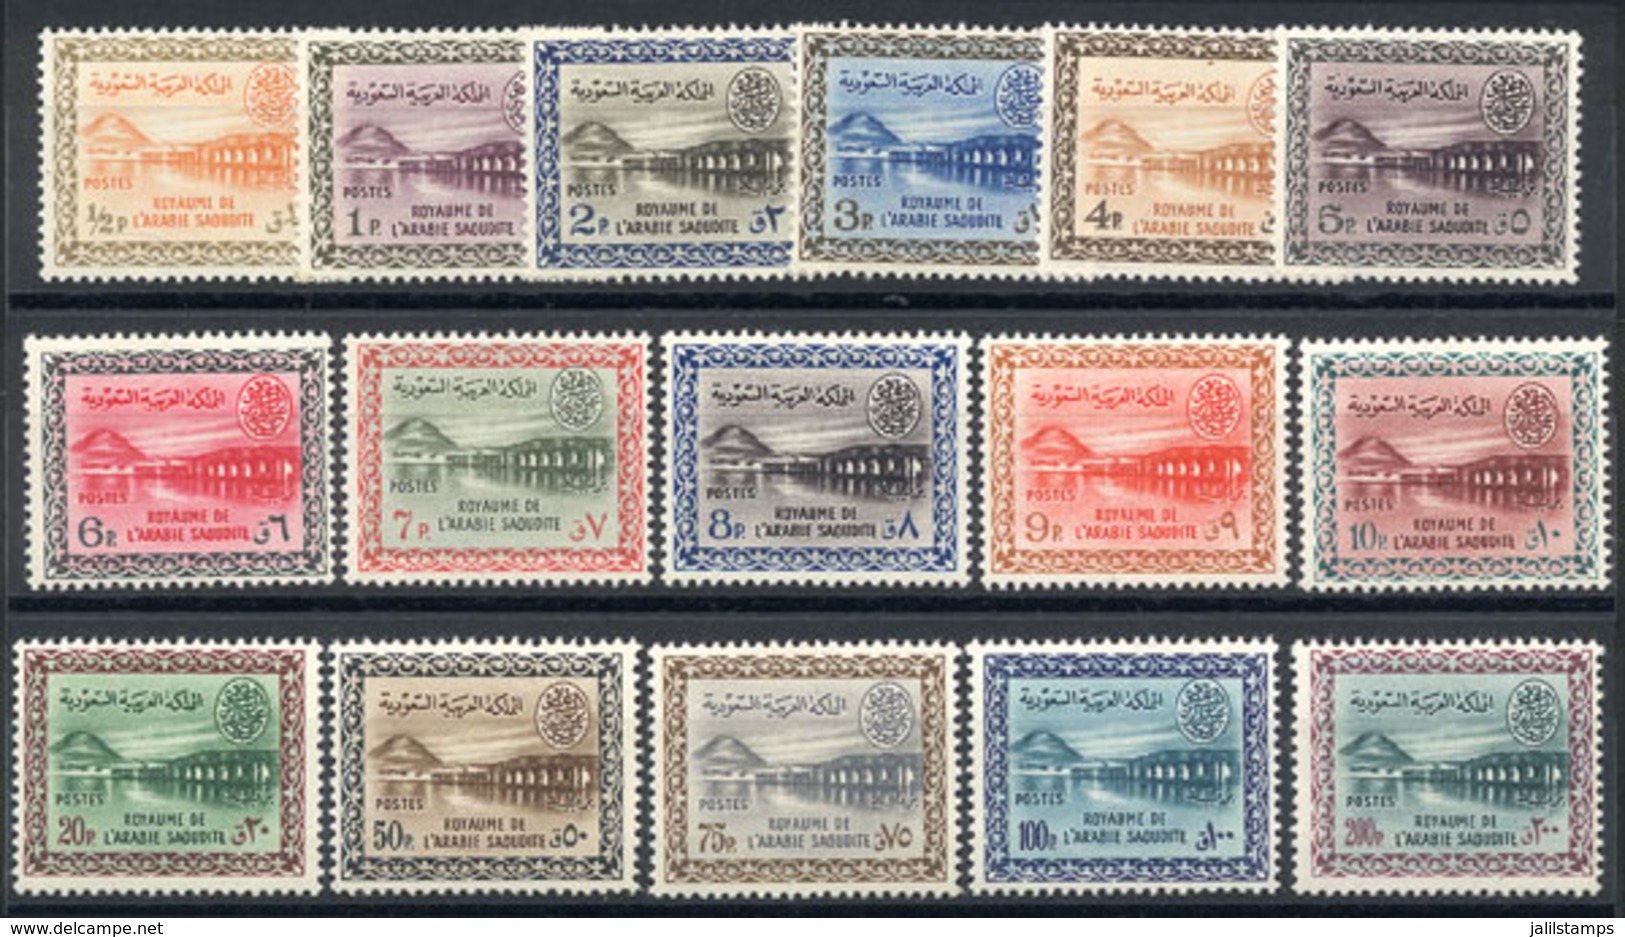 99 SAUDI ARABIA: Yvert 165/177, 1961 Wadi Shi Dam, Cmpl. Set Of 16 MNH Values, VF Q - Arabia Saudita